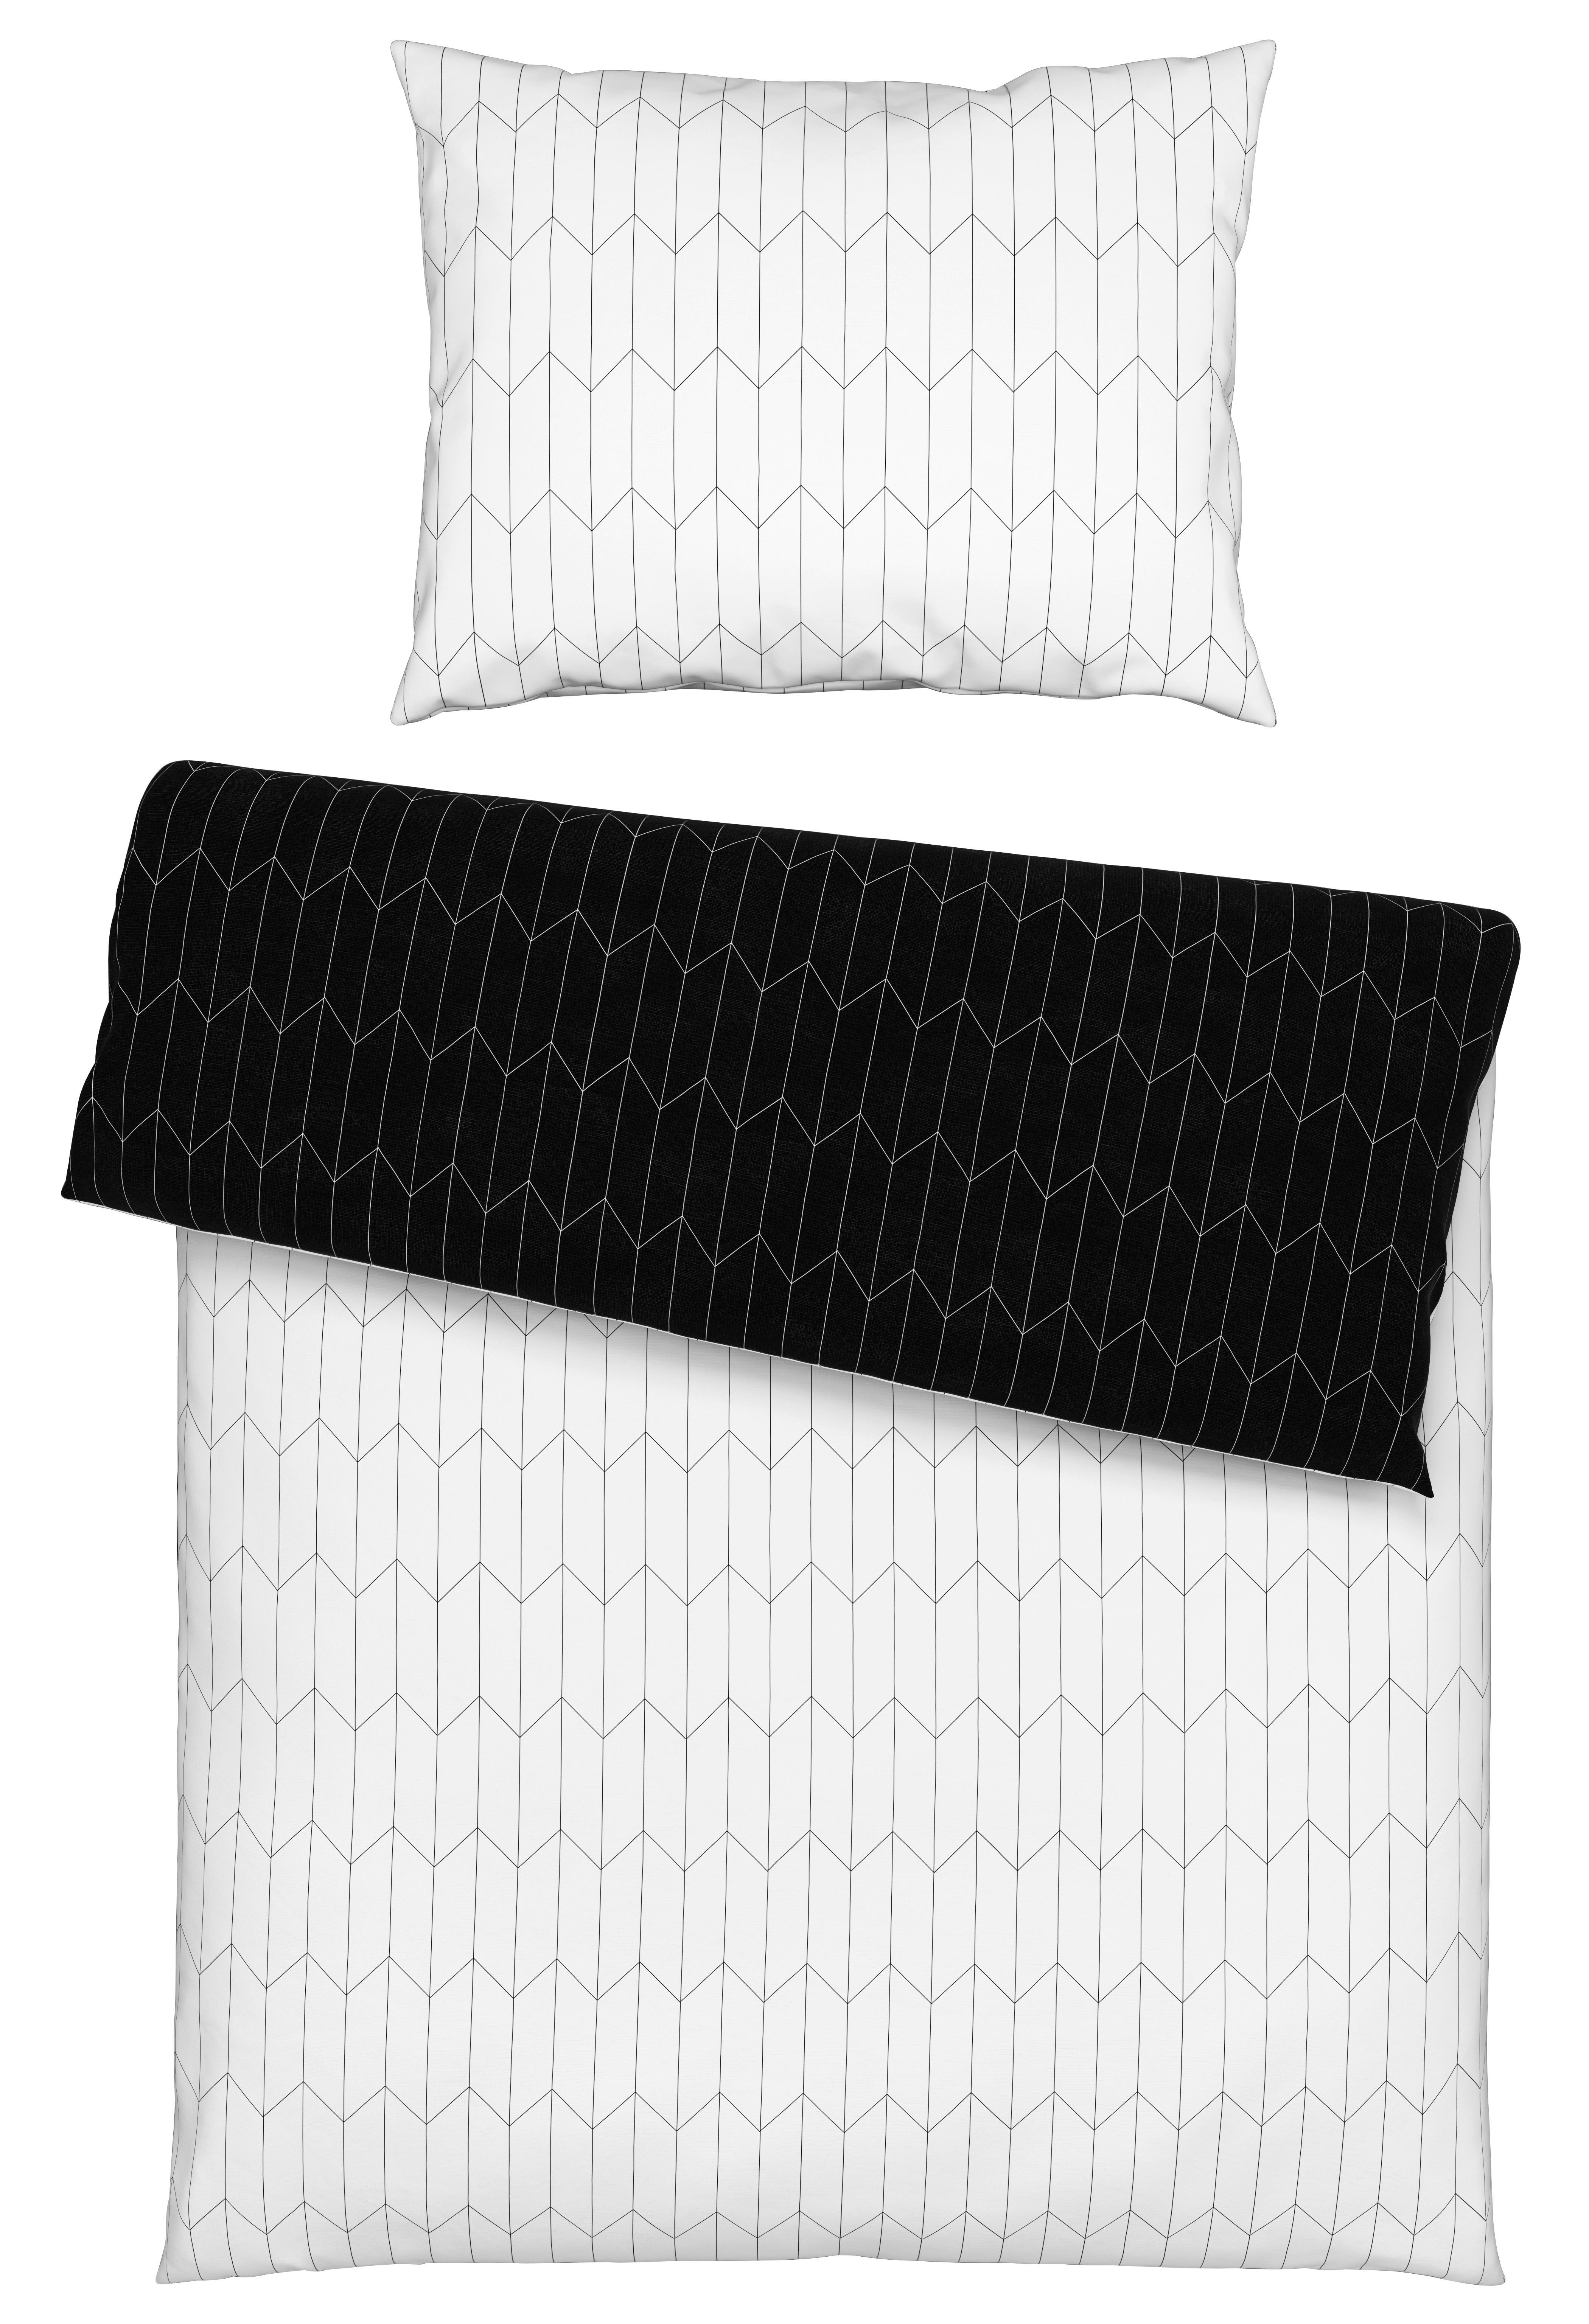 Povlečení Tegola, 140/200cm - bílá/černá, Moderní, textil (140/200cm) - Modern Living